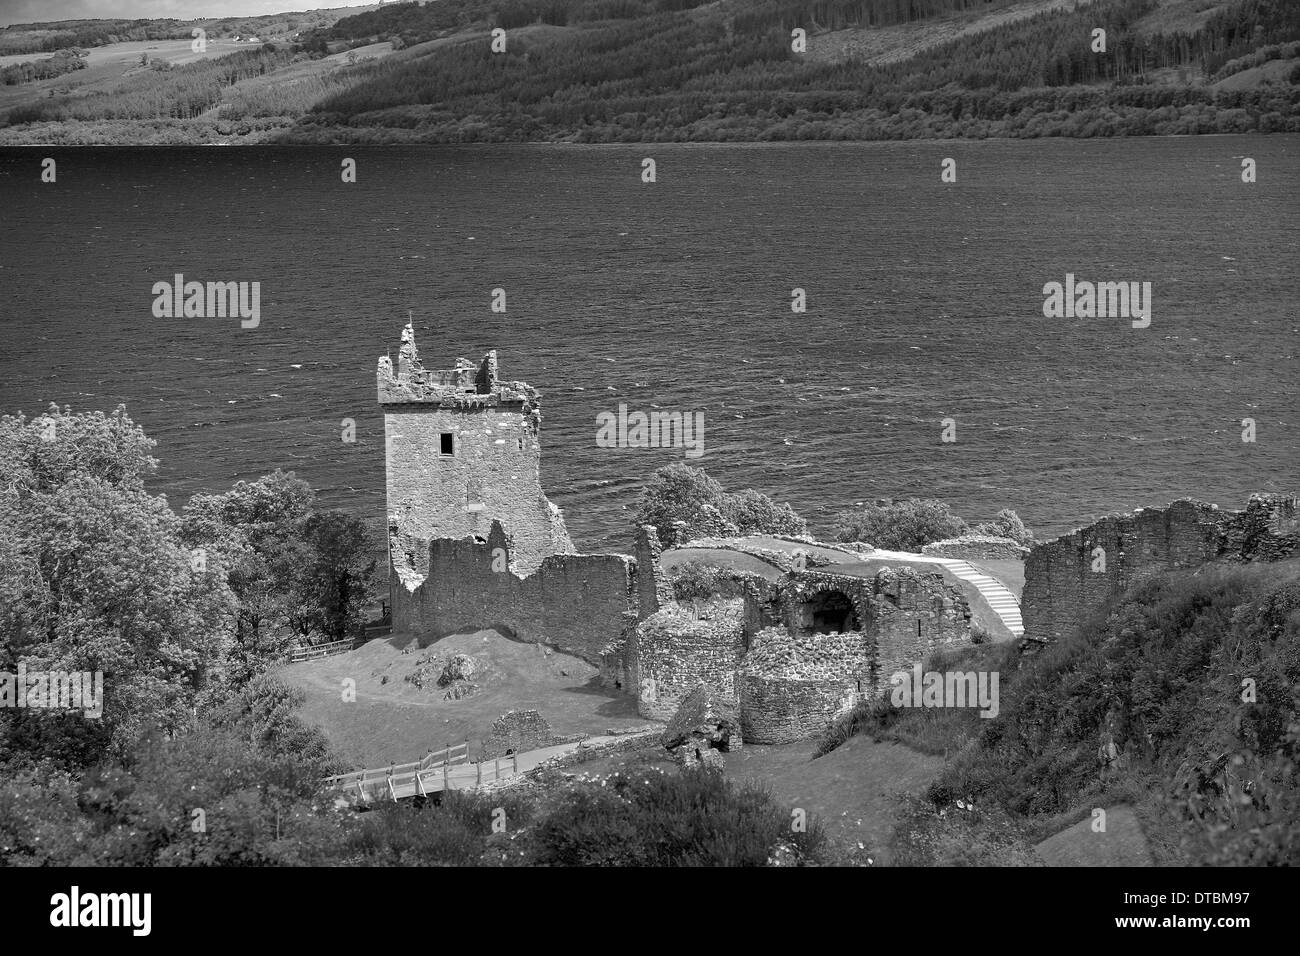 Ruines du château d'Urquhart, Loch Ness, Highlands d'Ecosse, Grande-Bretagne, Royaume-Uni Banque D'Images